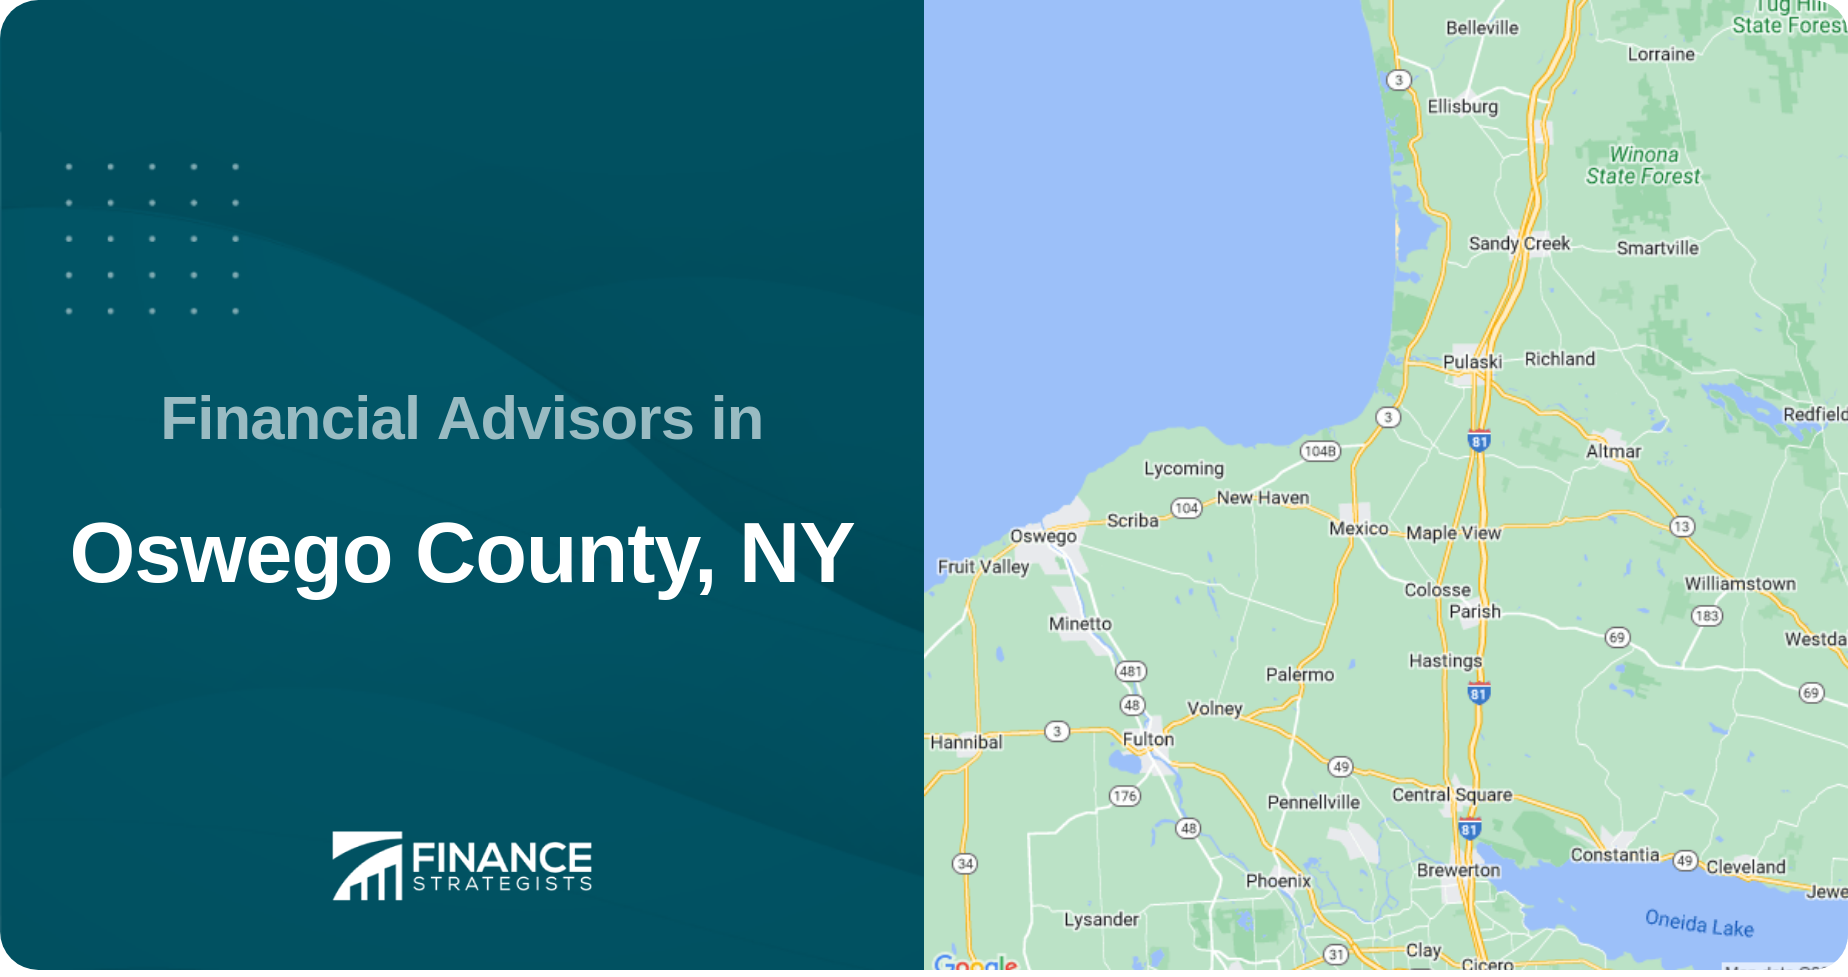 Financial Advisors in Oswego County, NY